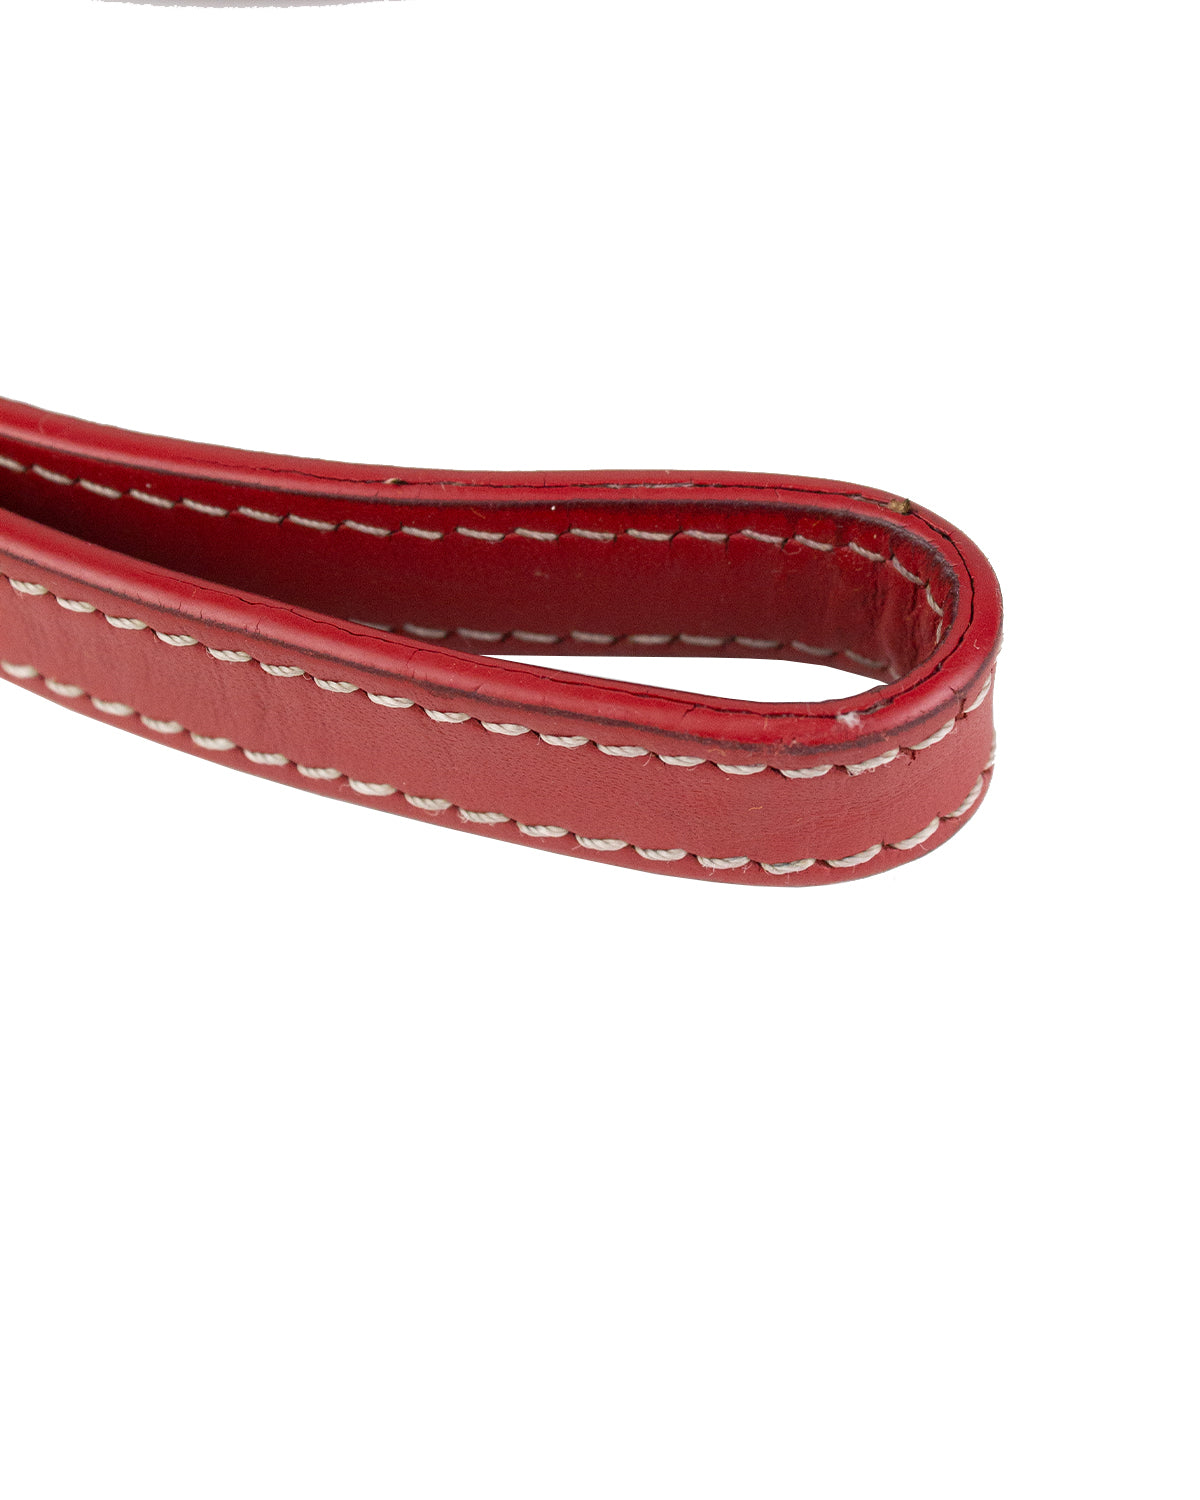 Goyard Goyardine Dog Leash - Red Pet Accessories, Decor & Accessories -  GOY31870